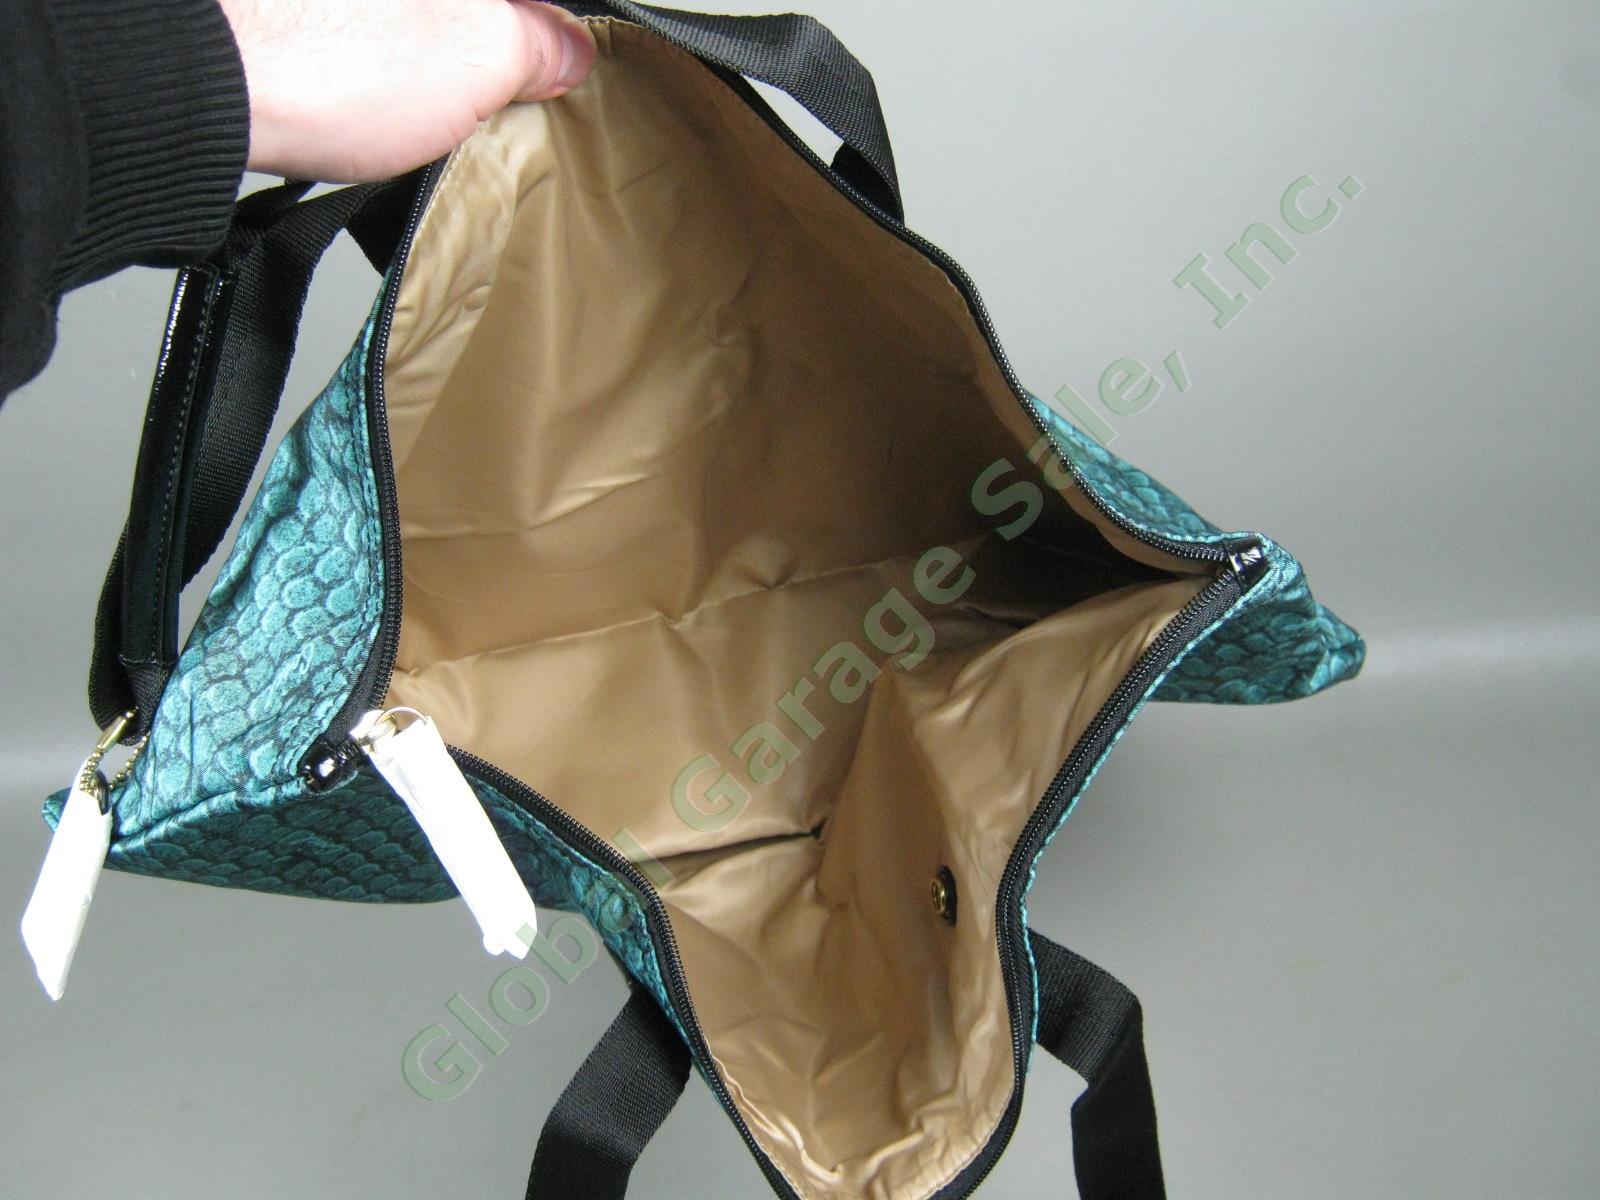 NWT Coach Emerald Getaway Snake Print Weekender Packable Travel Tote Bag $148 NR 4